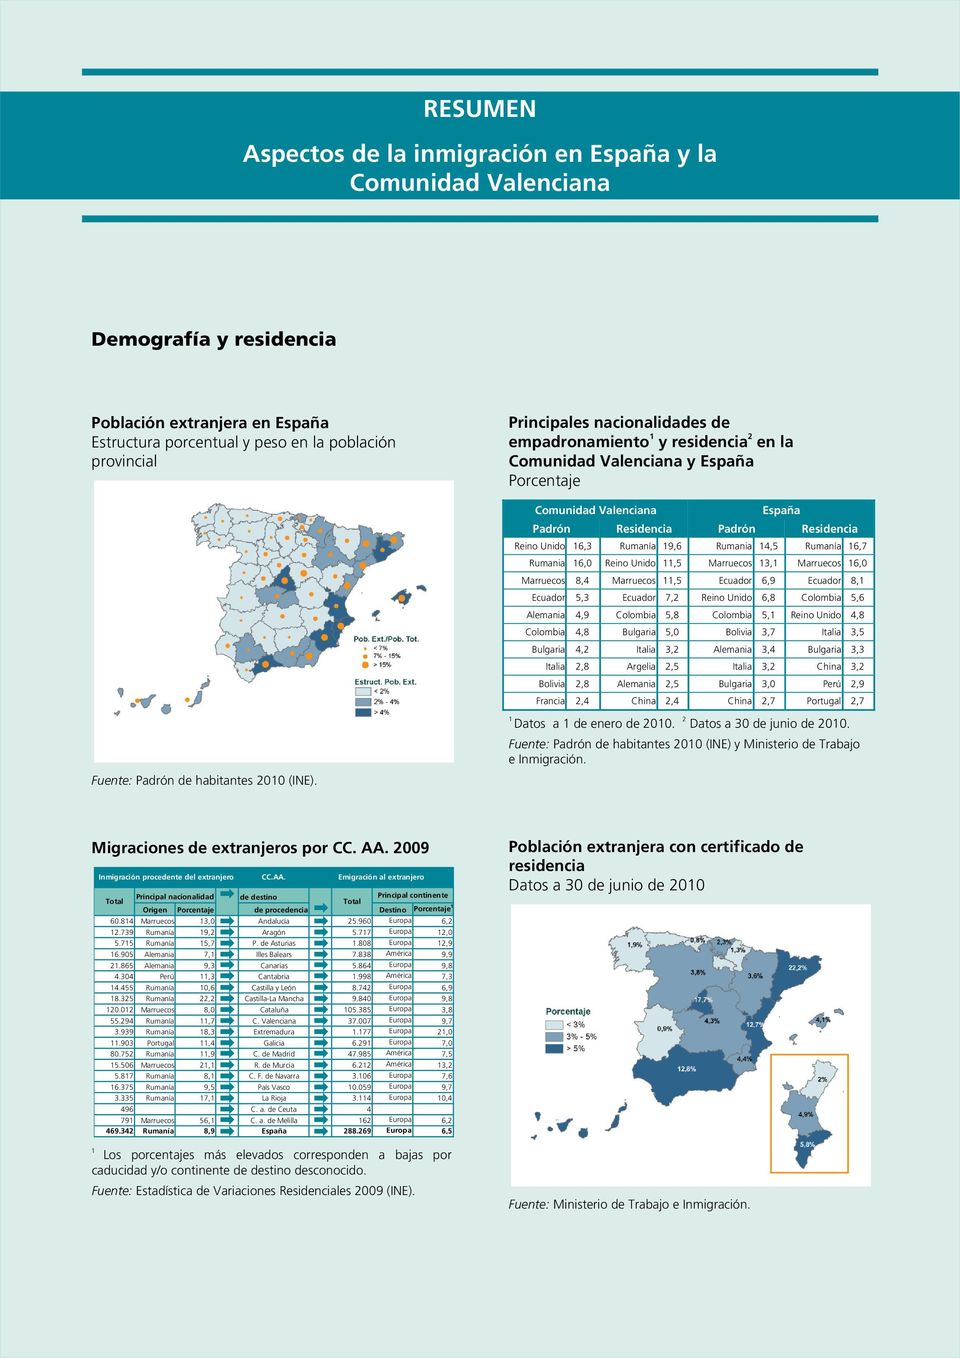 Principales nacionalidades de empadronamiento 1 y residencia 2 en la Comunidad Valenciana y España Porcentaje Comunidad Valenciana España Padrón Residencia Padrón Residencia Reino Reino Unido Unido